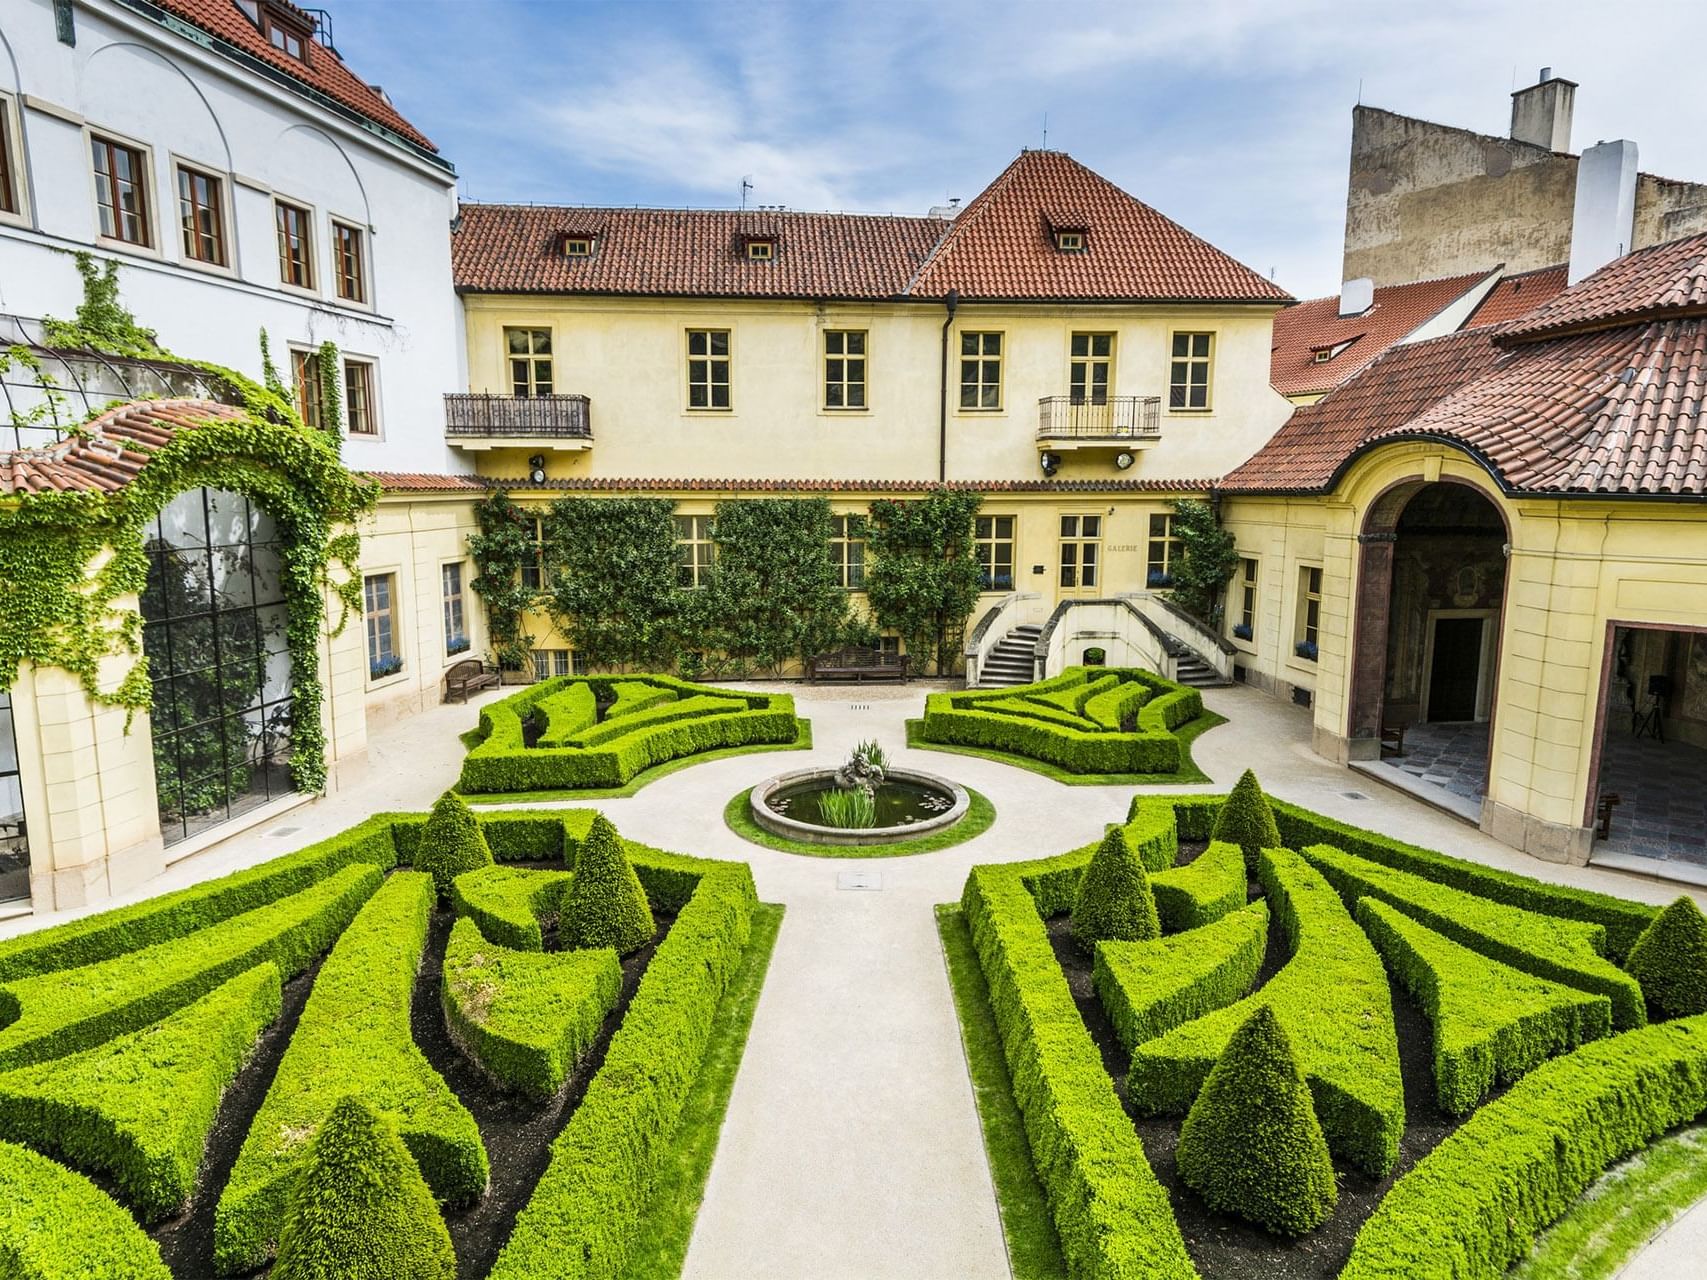 Vrtba Garden at Aria Hotel in Prague